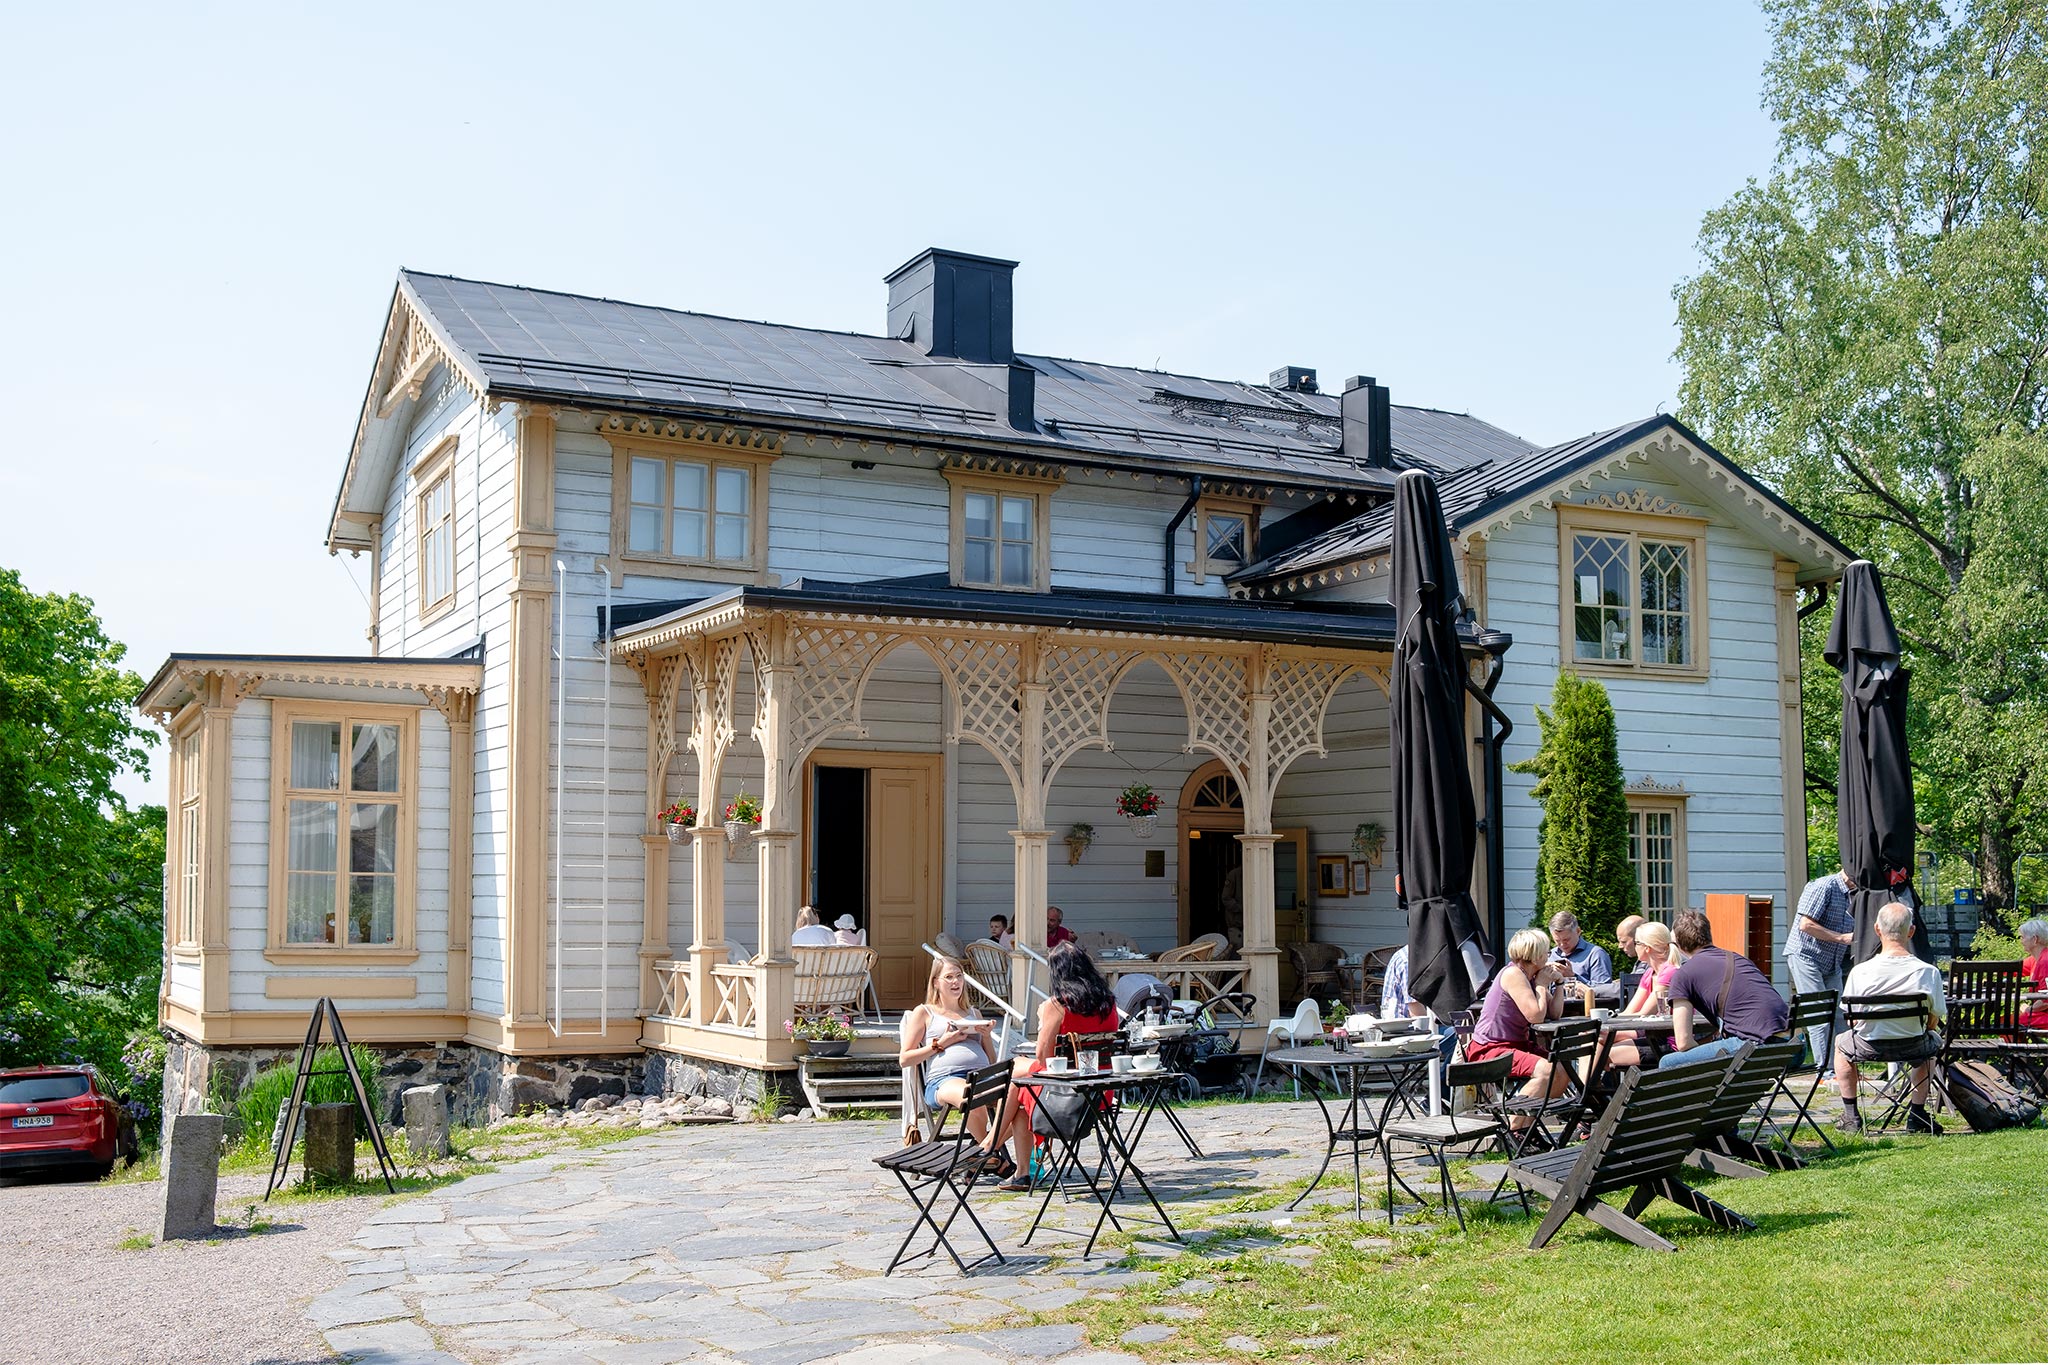 Café Zoceria, Tarvaspää © Tuulia Kolehmainen